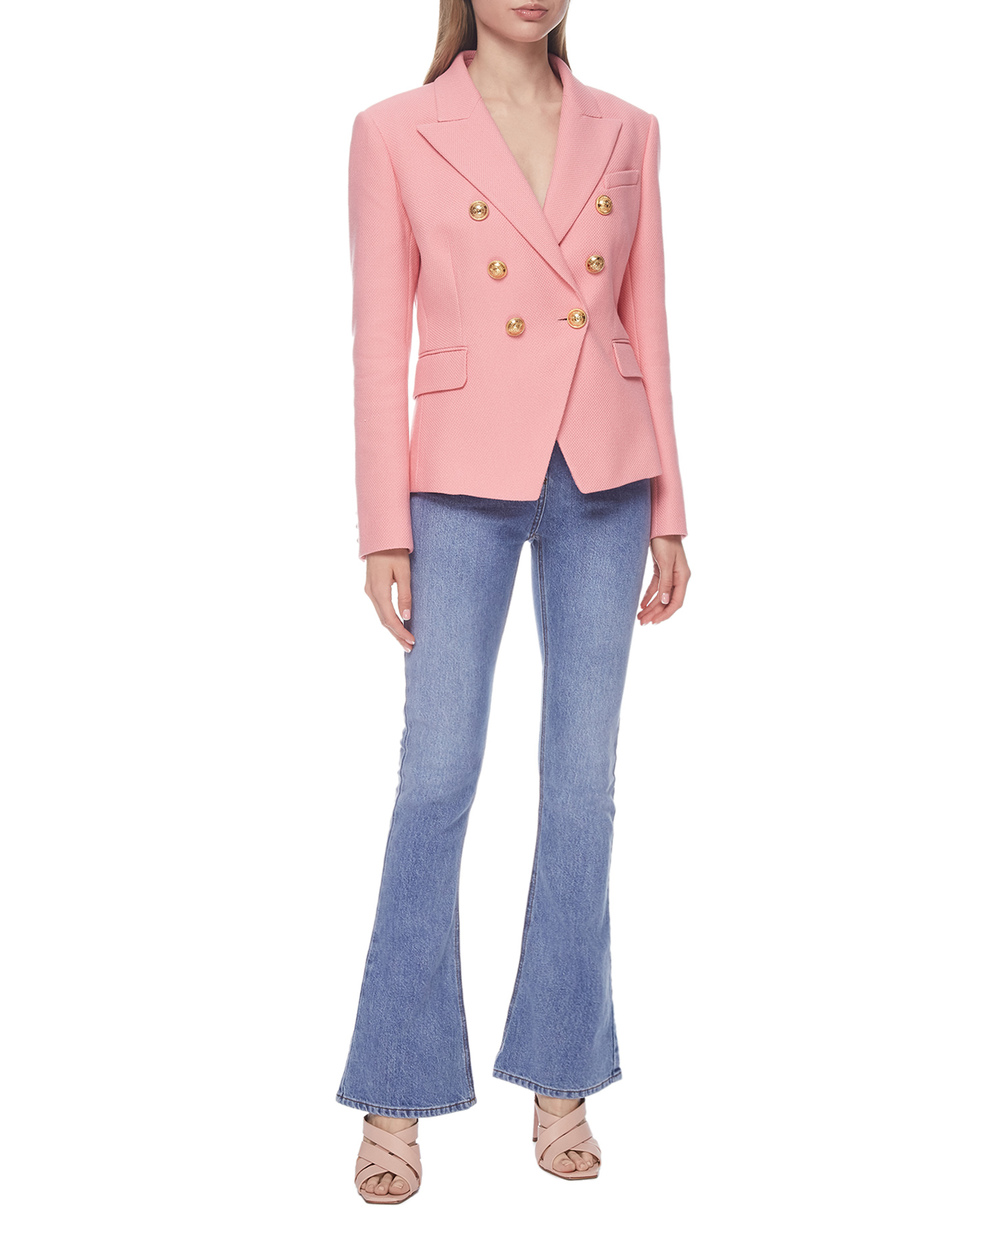 Жакет Balmain VF17110C208-S, розовый цвет • Купить в интернет-магазине Kameron